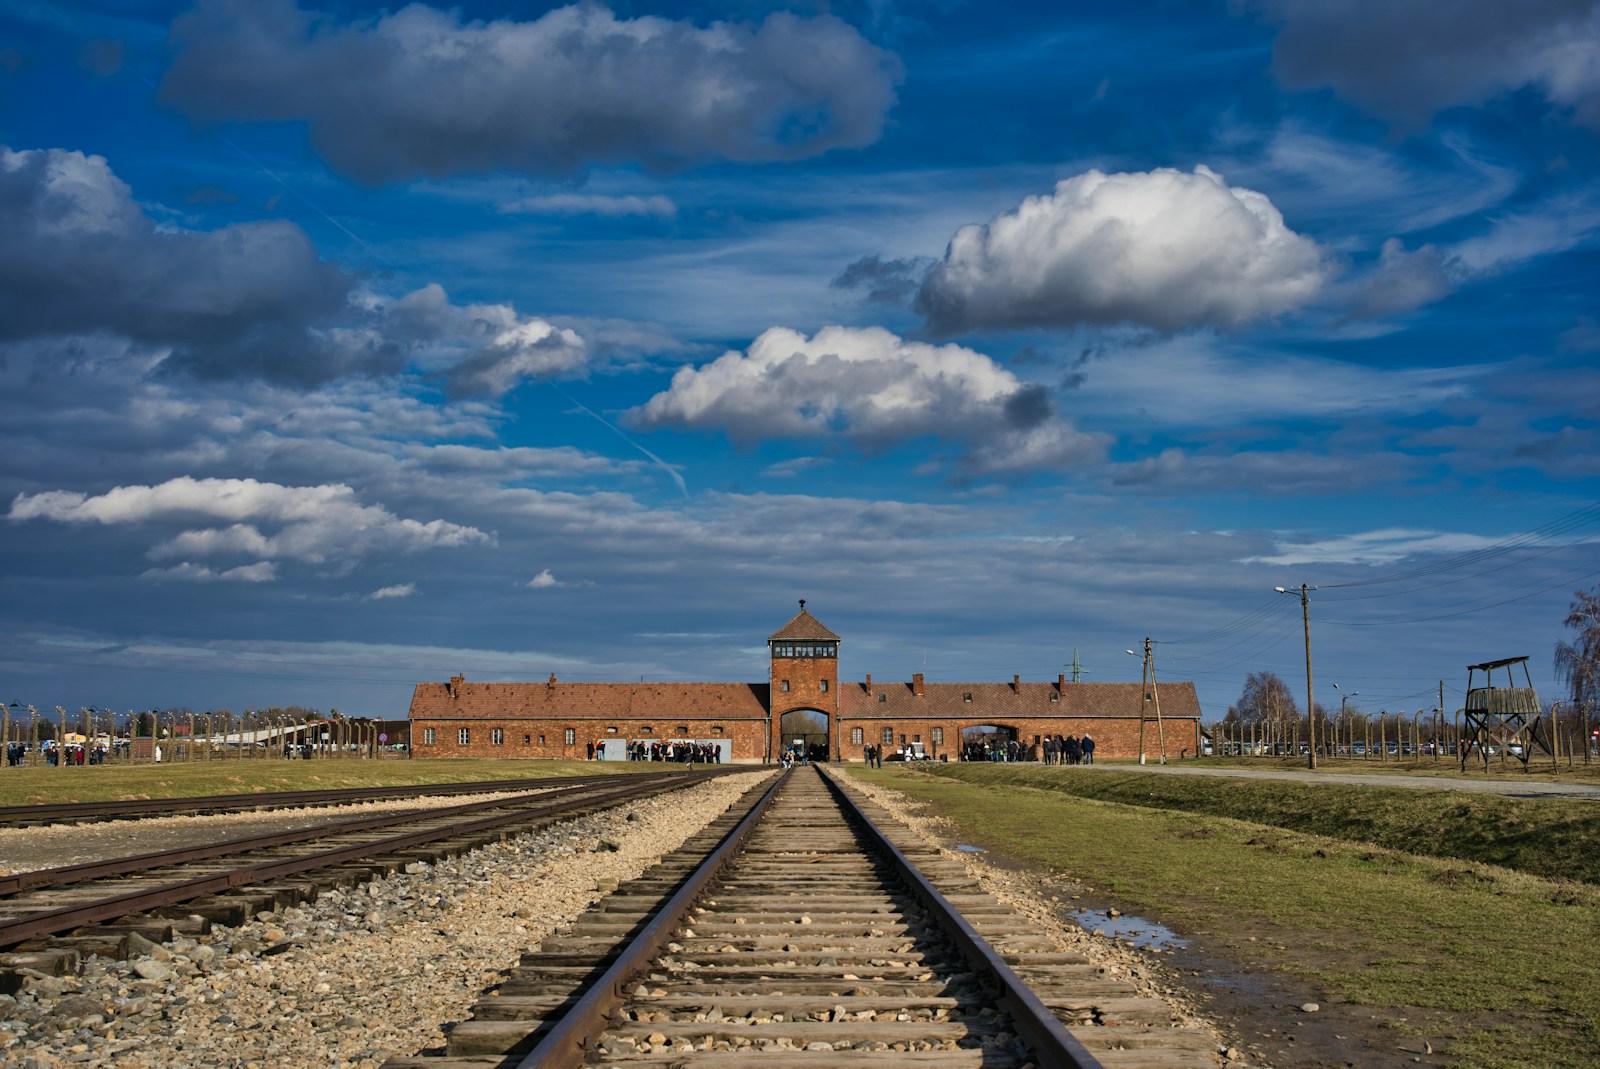 27 avril 1940 Himmler ordonne la construction d'un camp de concentration à Auschwitz. Plus d'1,1 million de personnes y mourront, dont environ 900 000 le jour de leur arrivée. Le camp sera libéré le 27 janvier 1945 par l'Armée rouge.